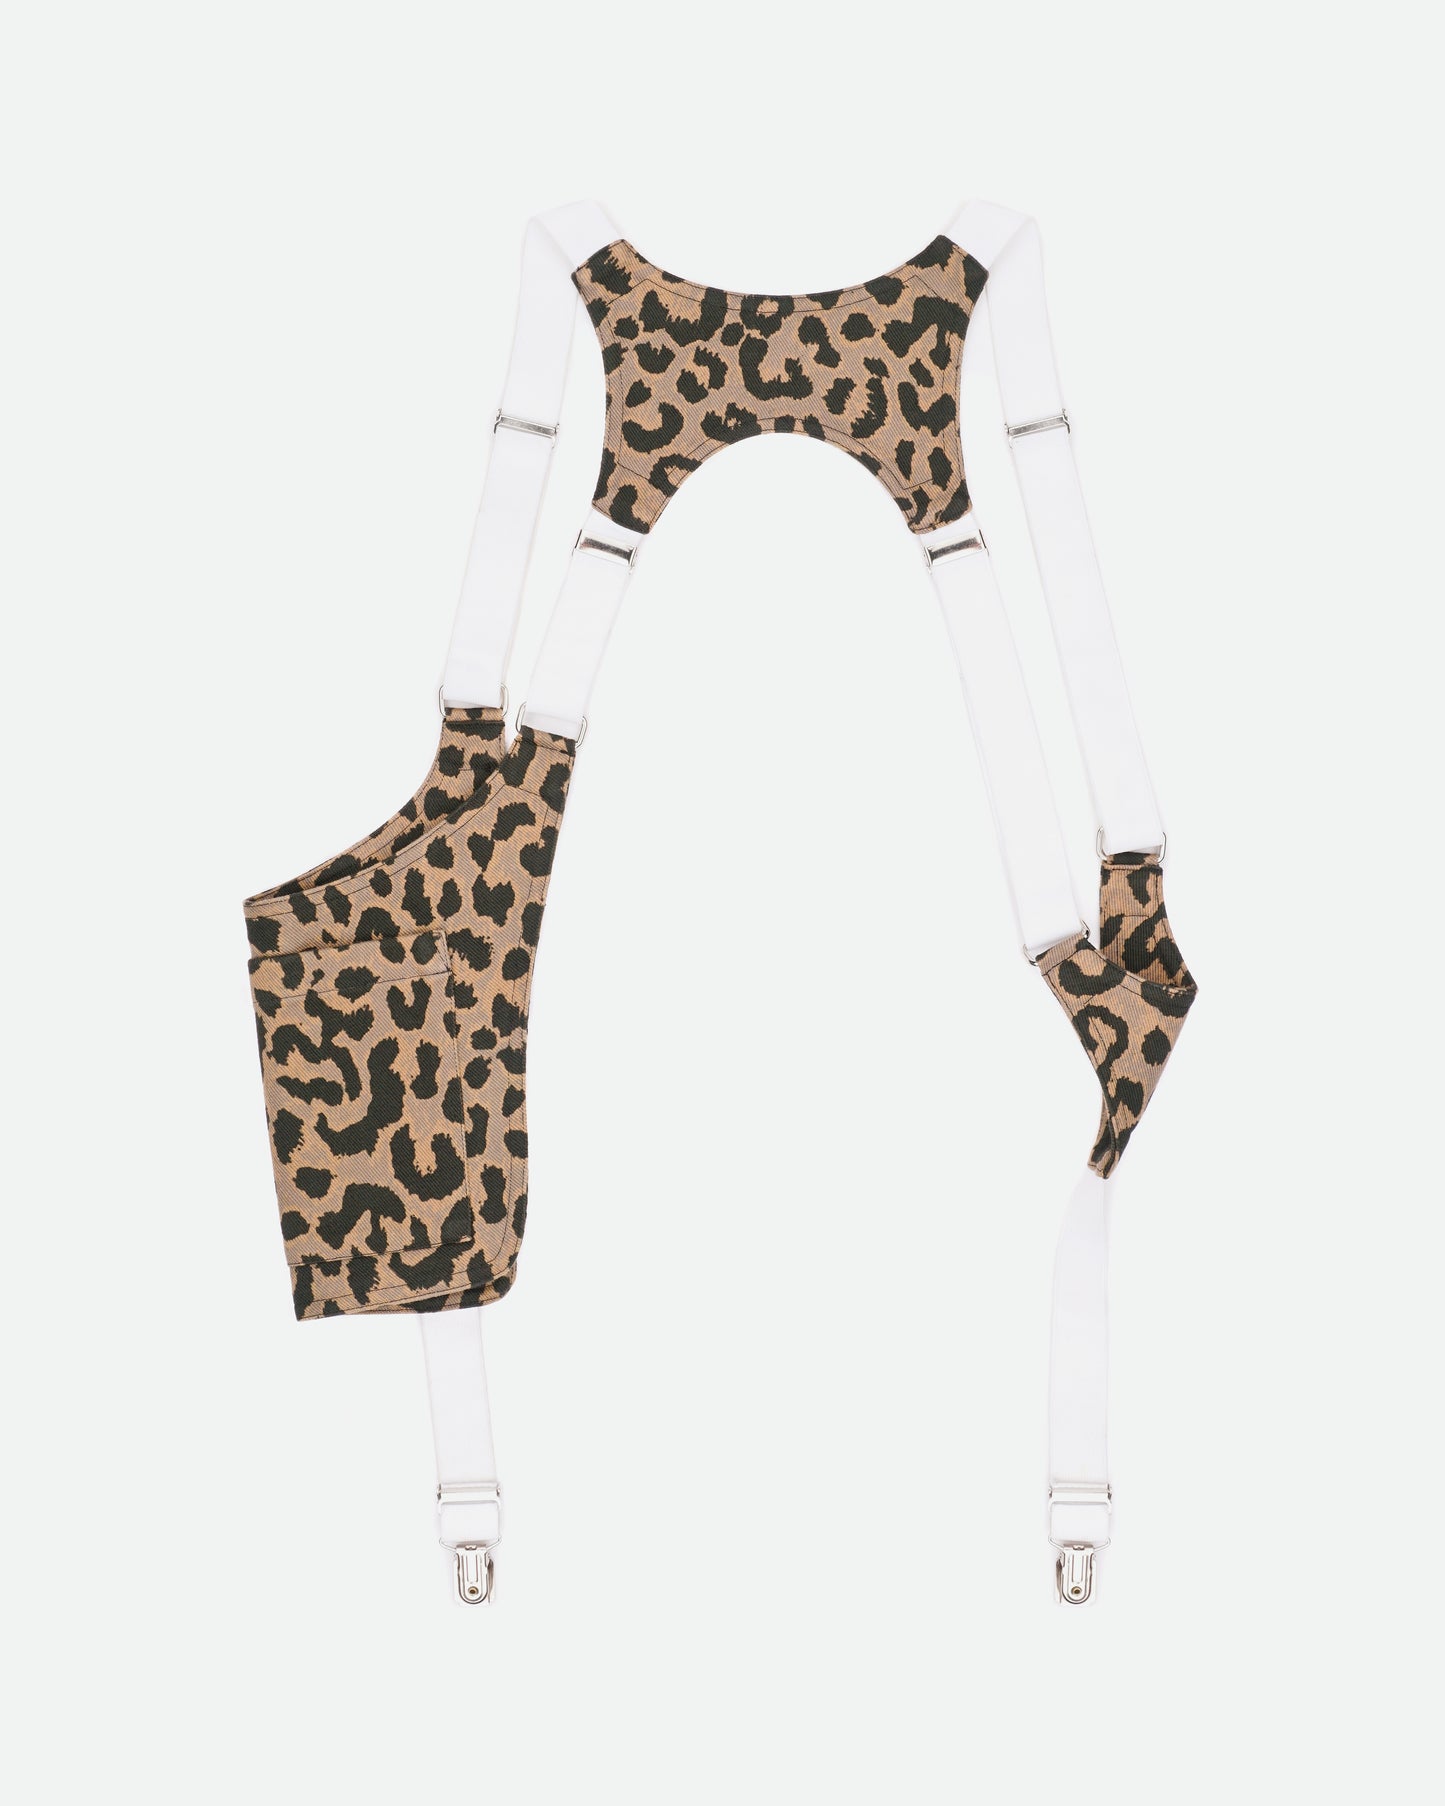 Dries van Noten SS14 Leopard Holster Suspenders